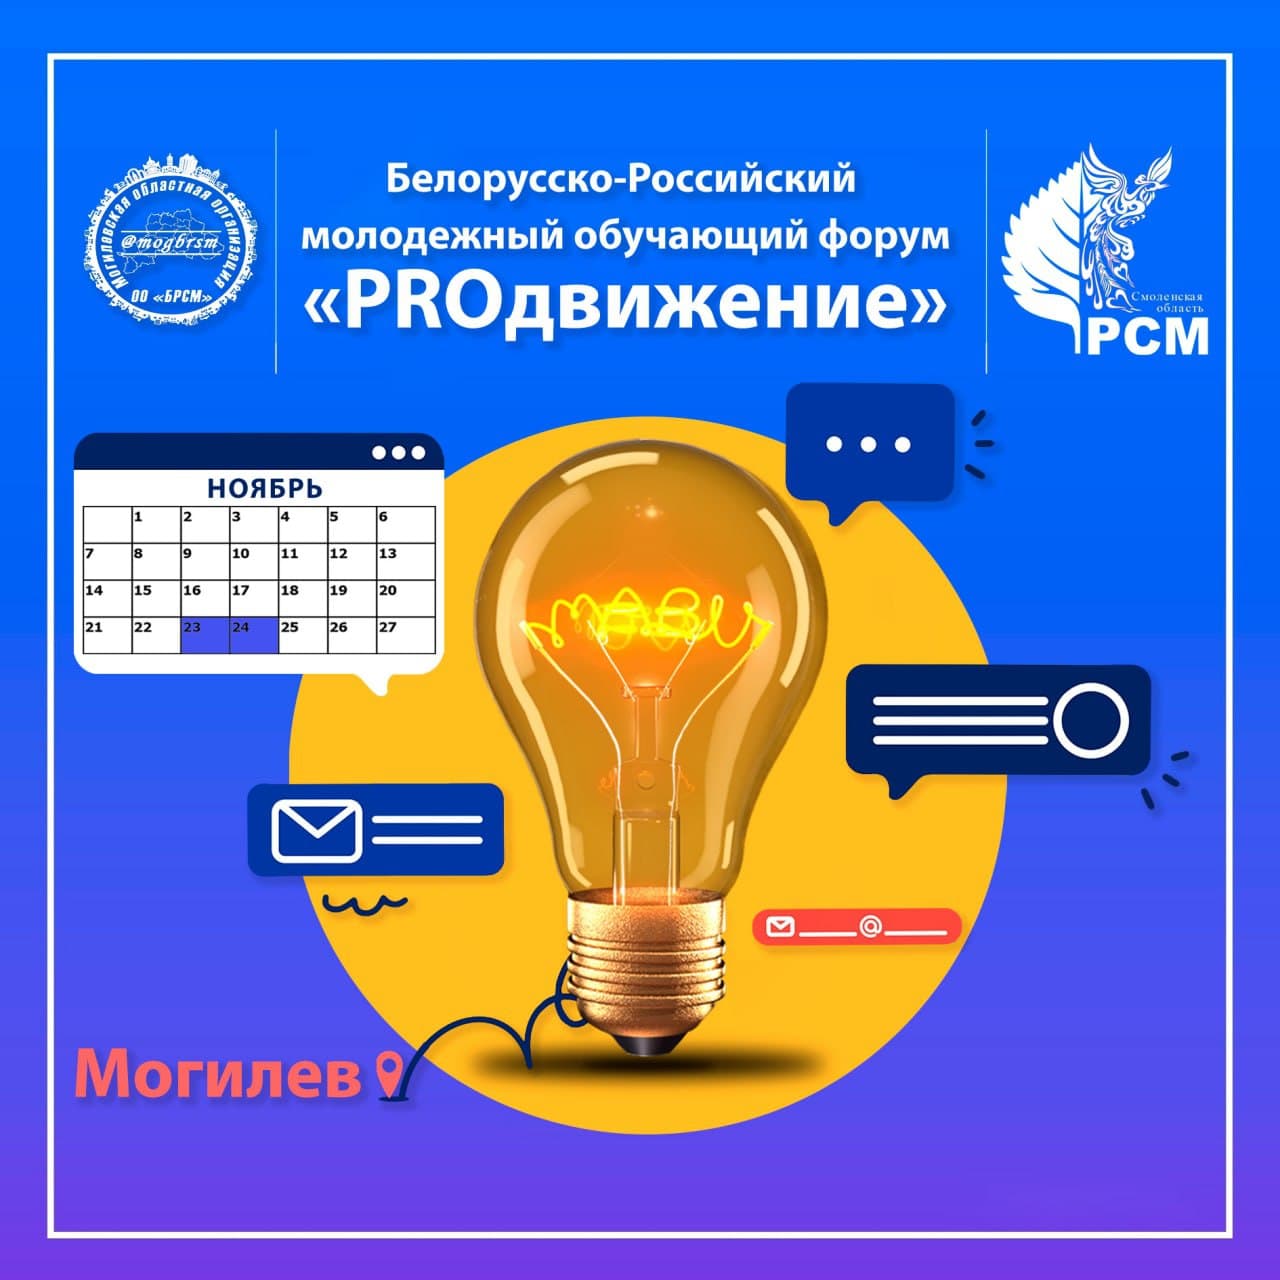 «PROдвижение»: белорусско-российский молодежный форум пройдет в Могилеве 23-24 ноября